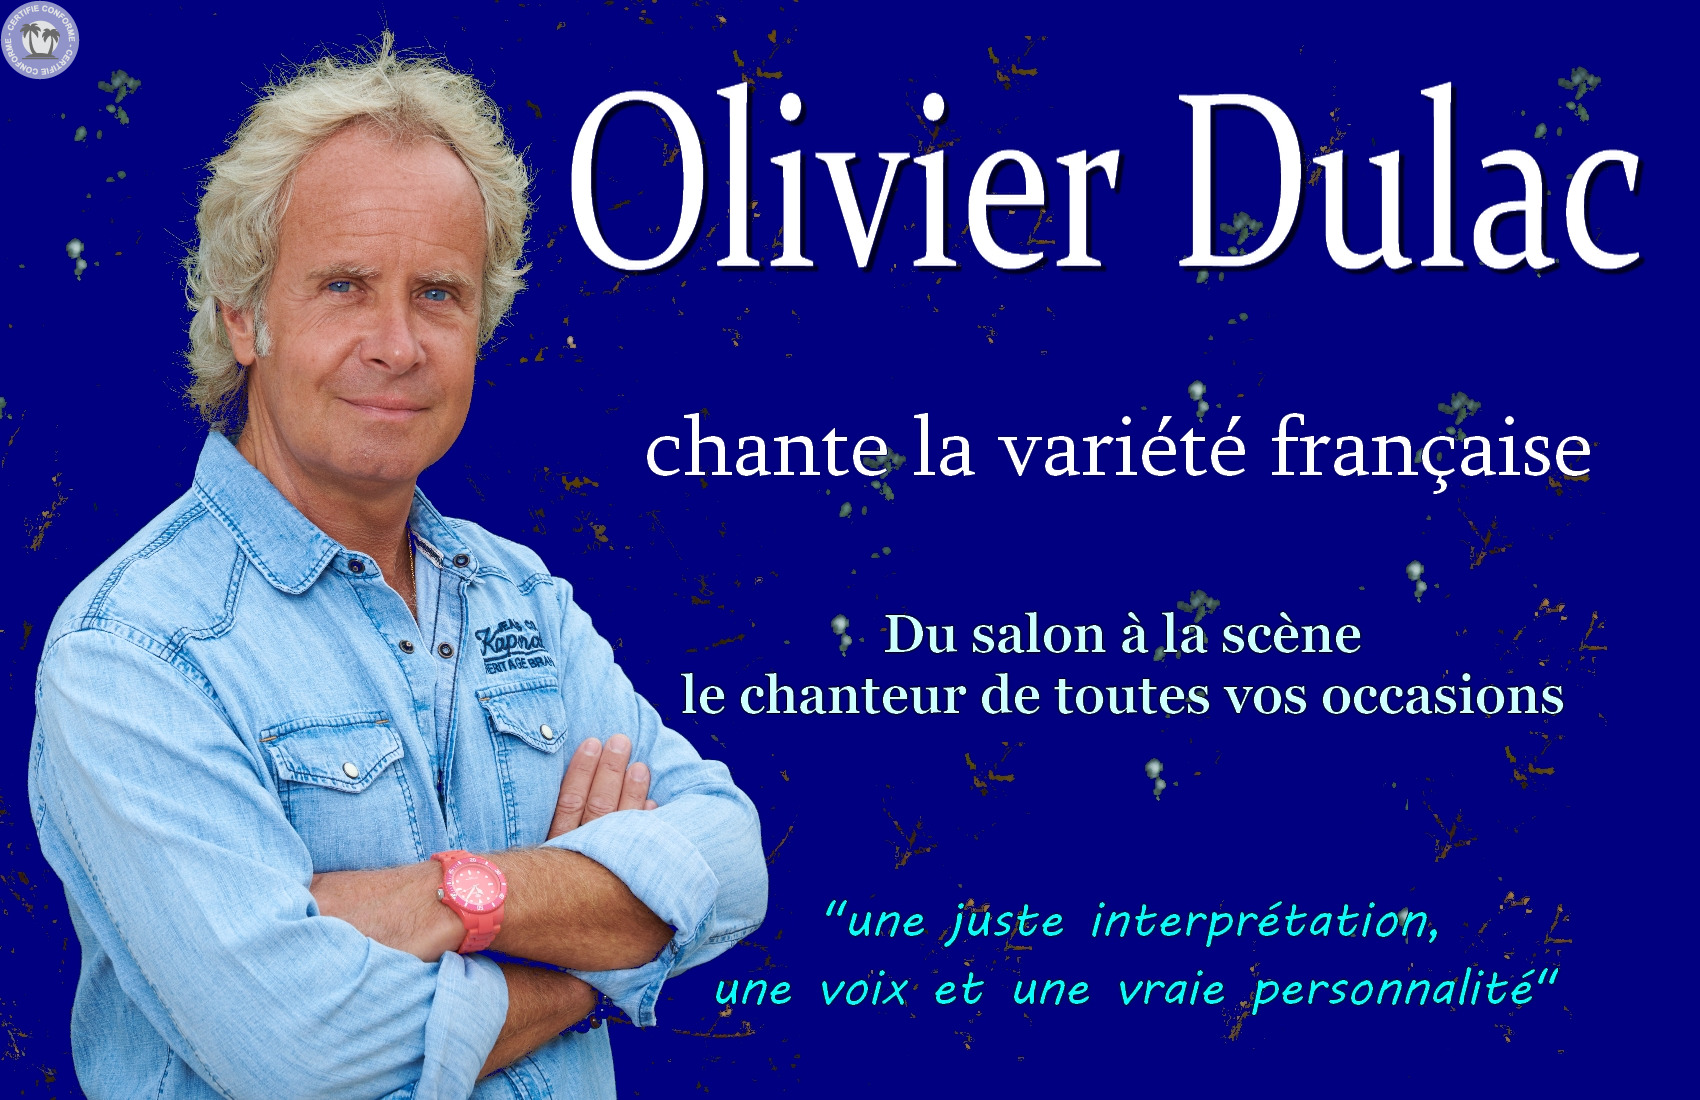 service-divers-nouvelle-aquitaine-gironde-olivier-dulac-chante-les-belles-chansons-francaises-0121318222442485258.jpg